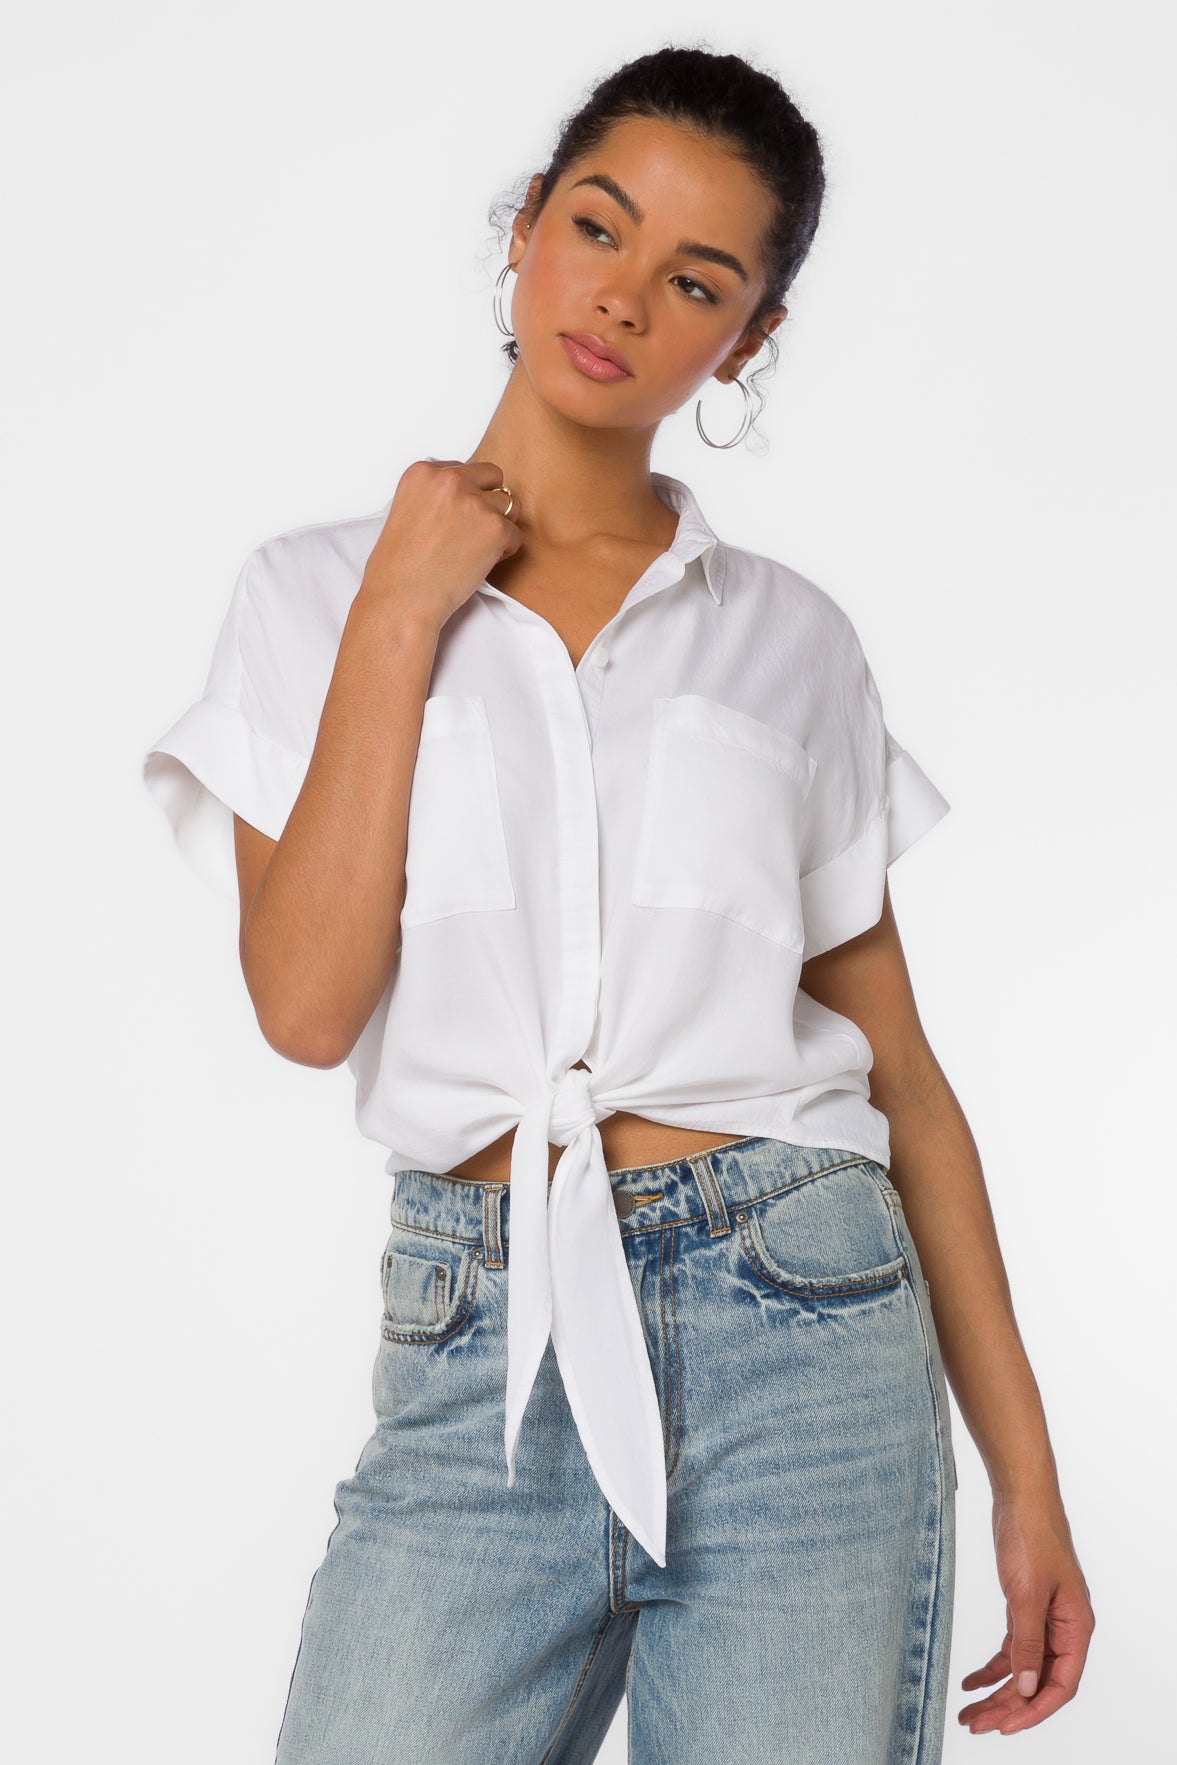 Zuria Optic White Shirt - Tops - Velvet Heart Clothing